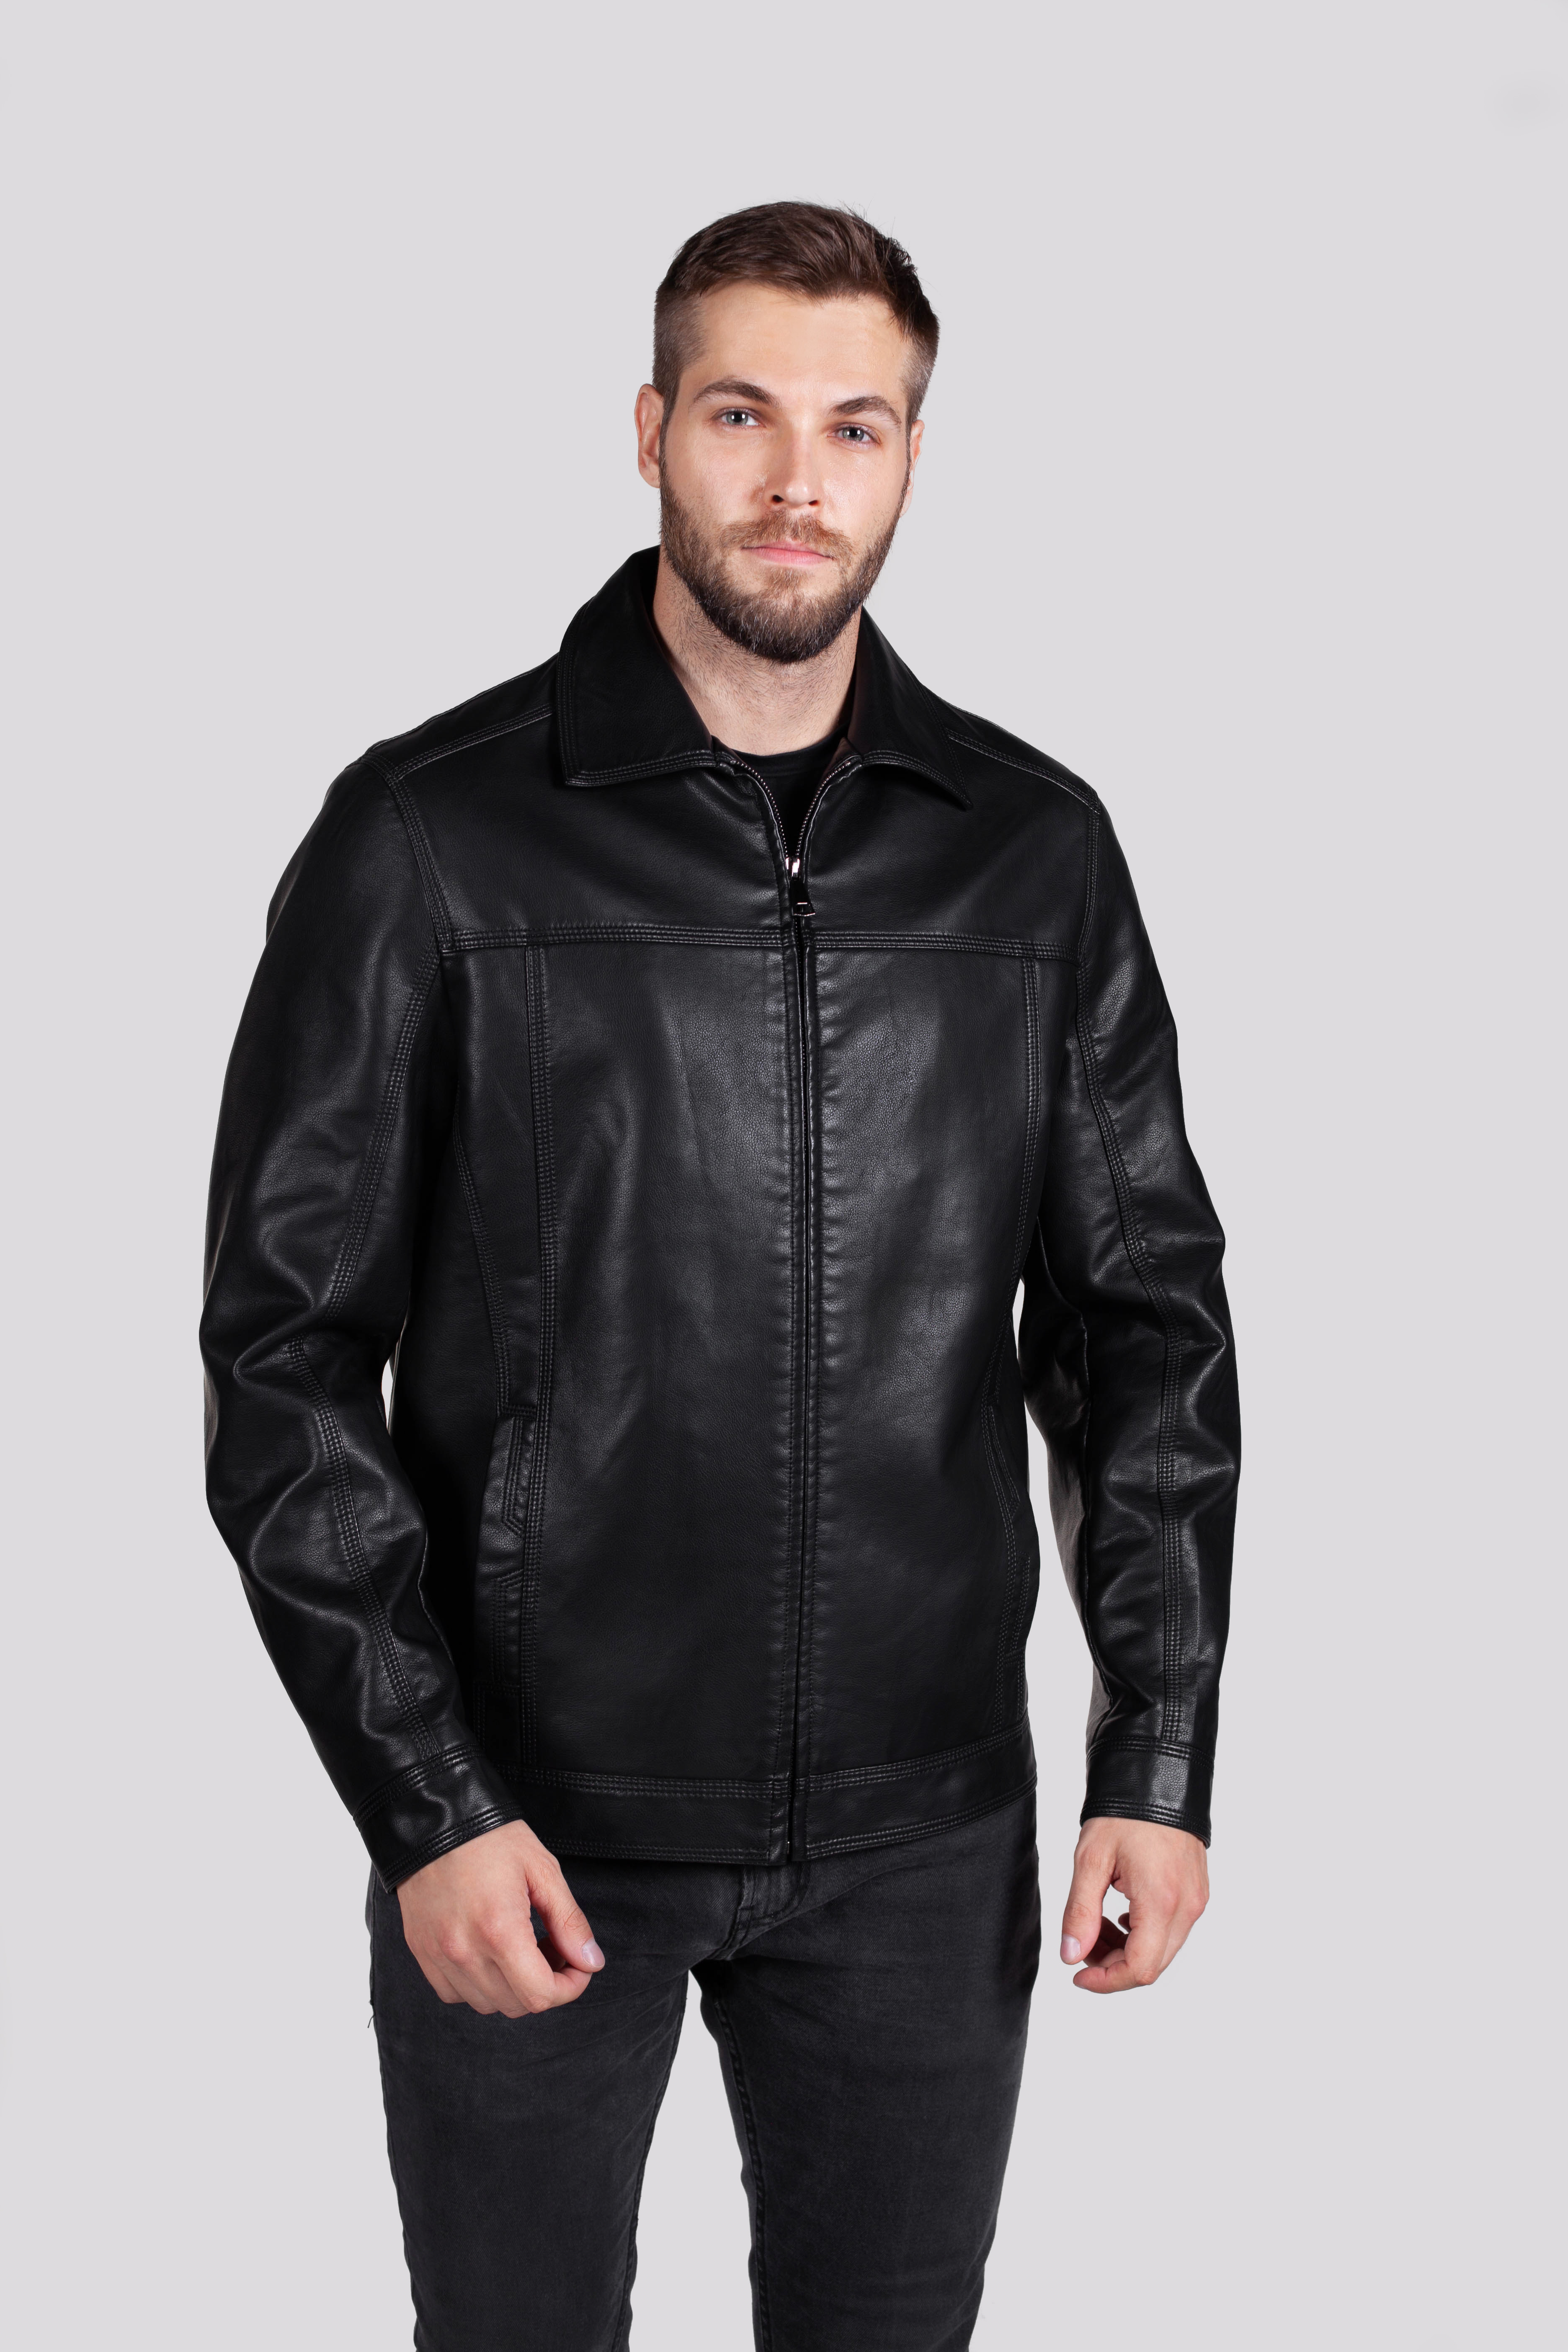 Кожаная куртка мужская RATSKA 631 черная 64 RU